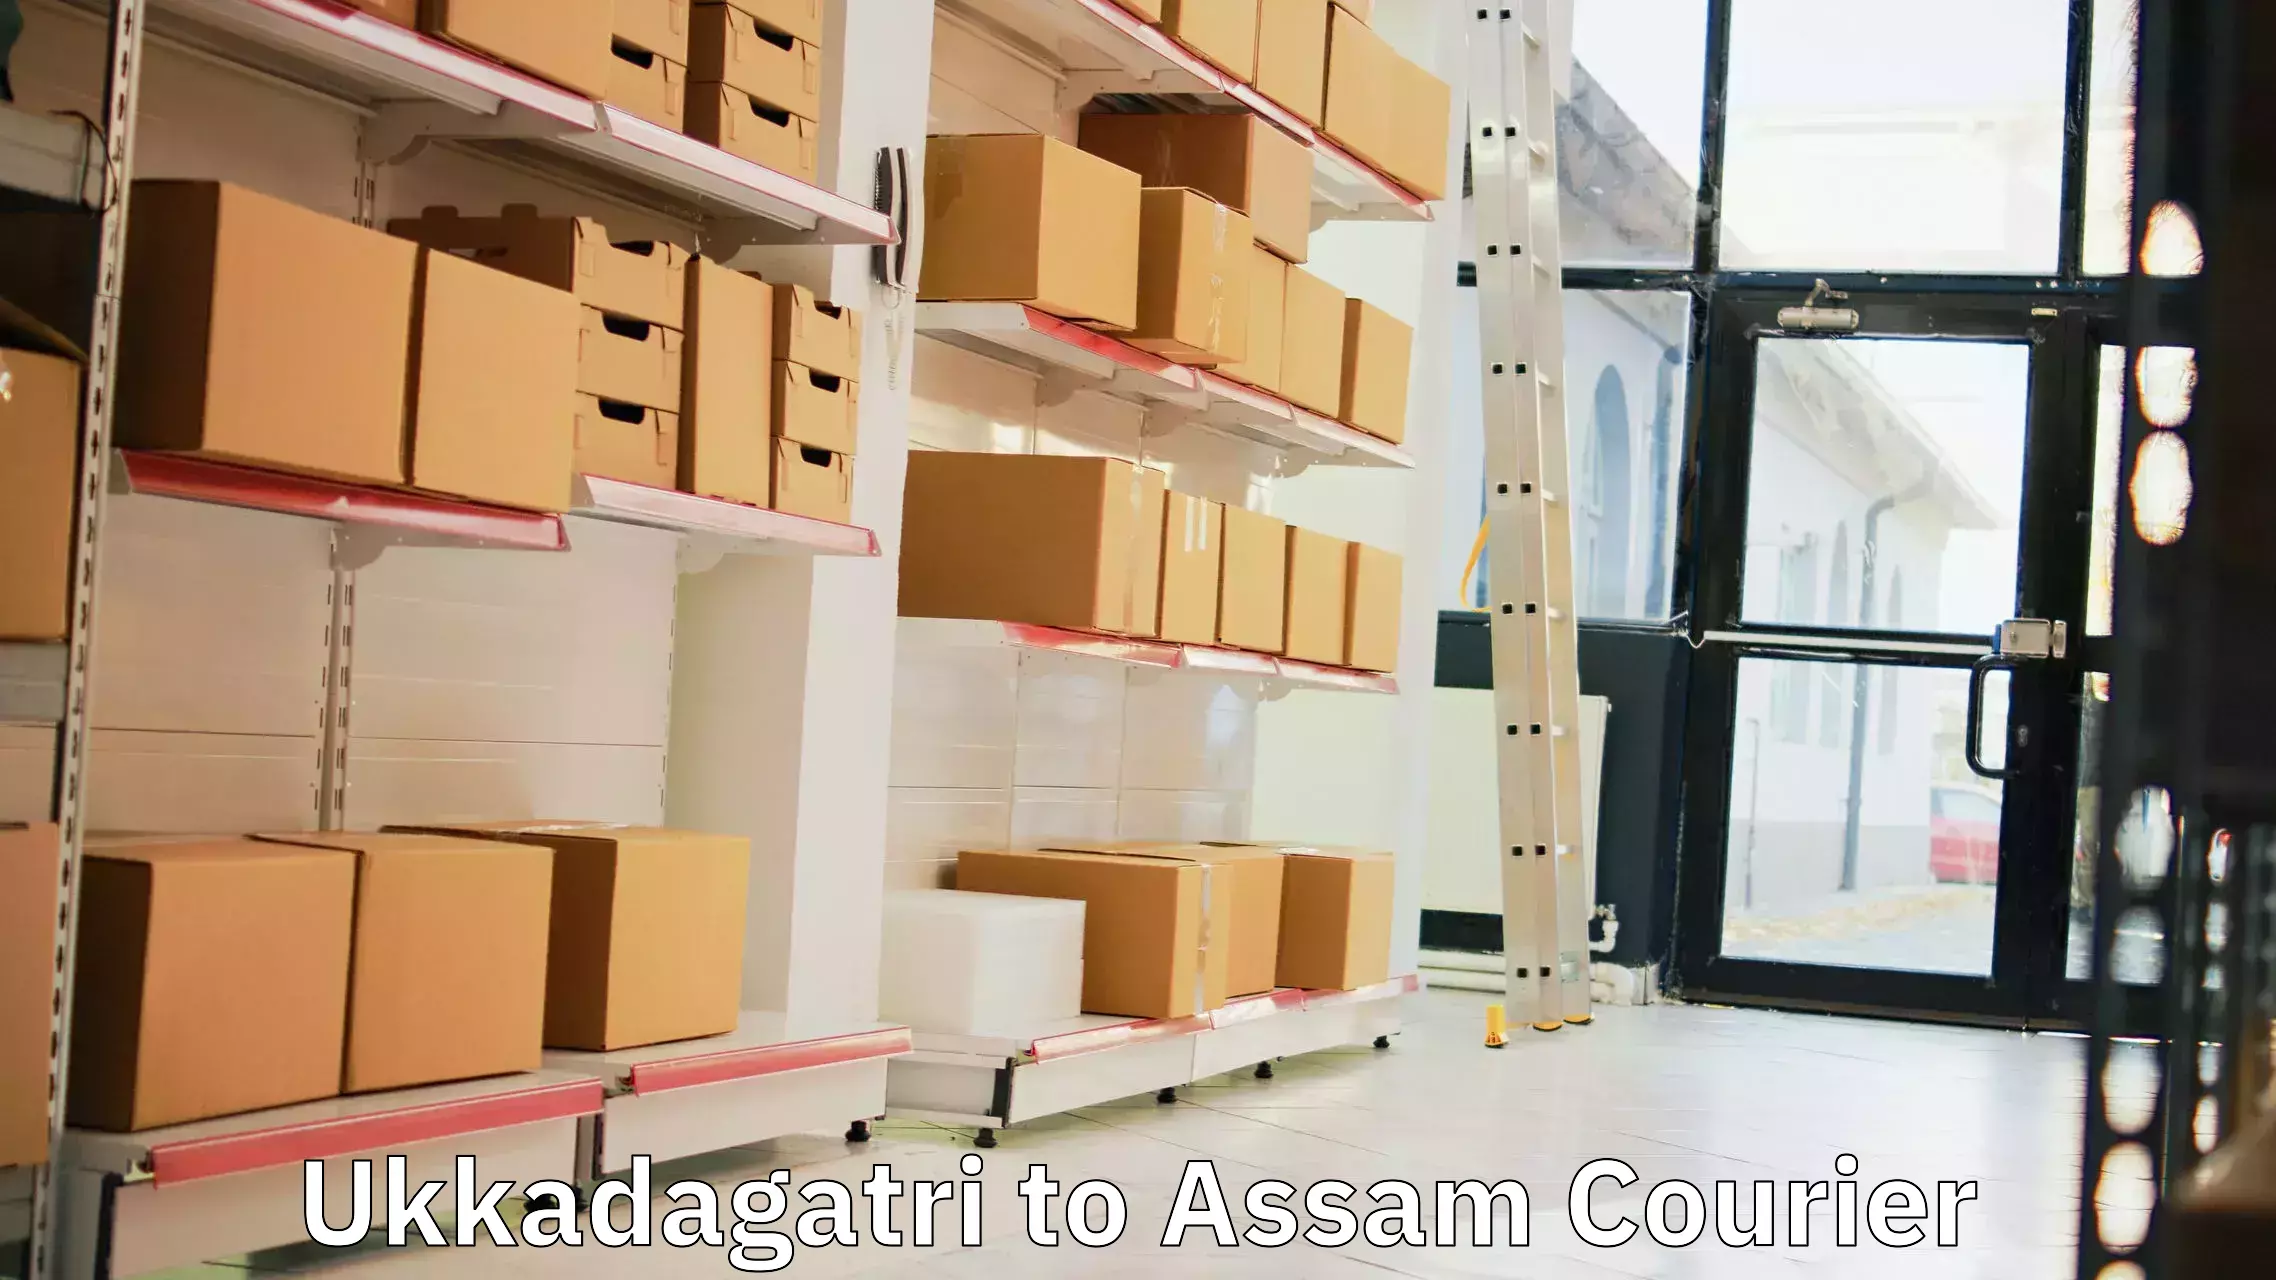 Flexible delivery schedules Ukkadagatri to Assam